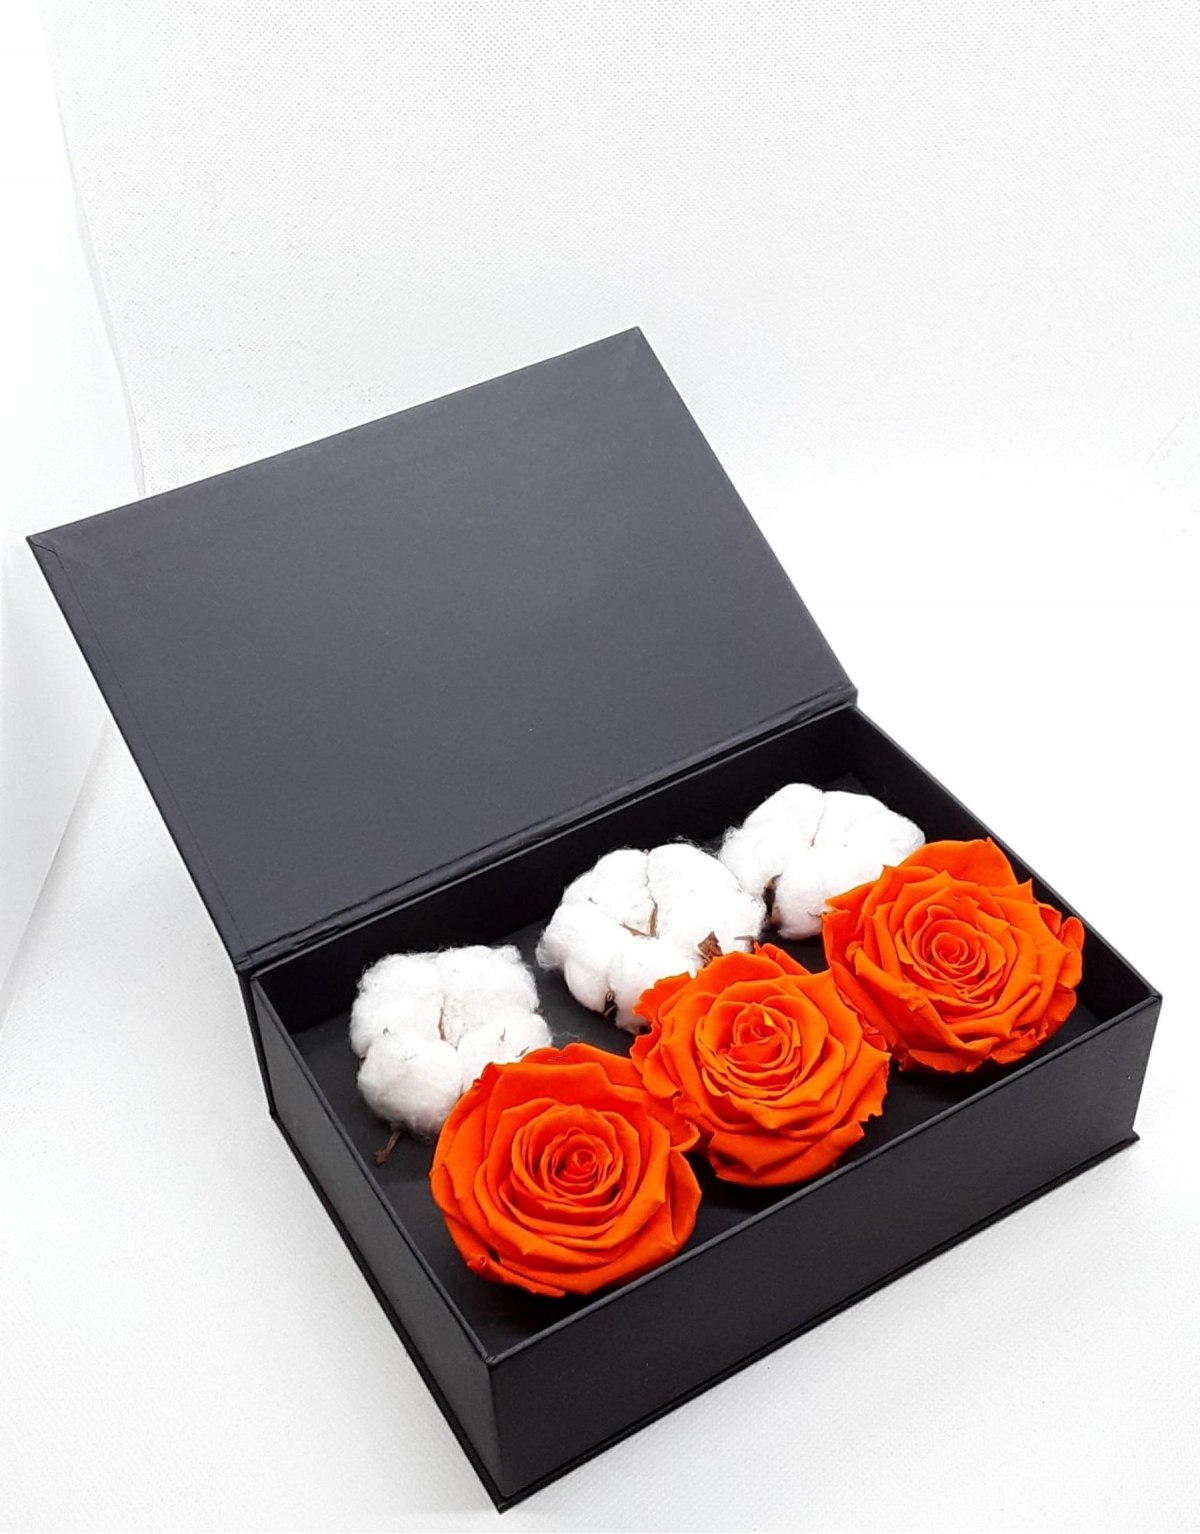 Rose Stabilizzate Arancio in Cofanetto Luxury 3